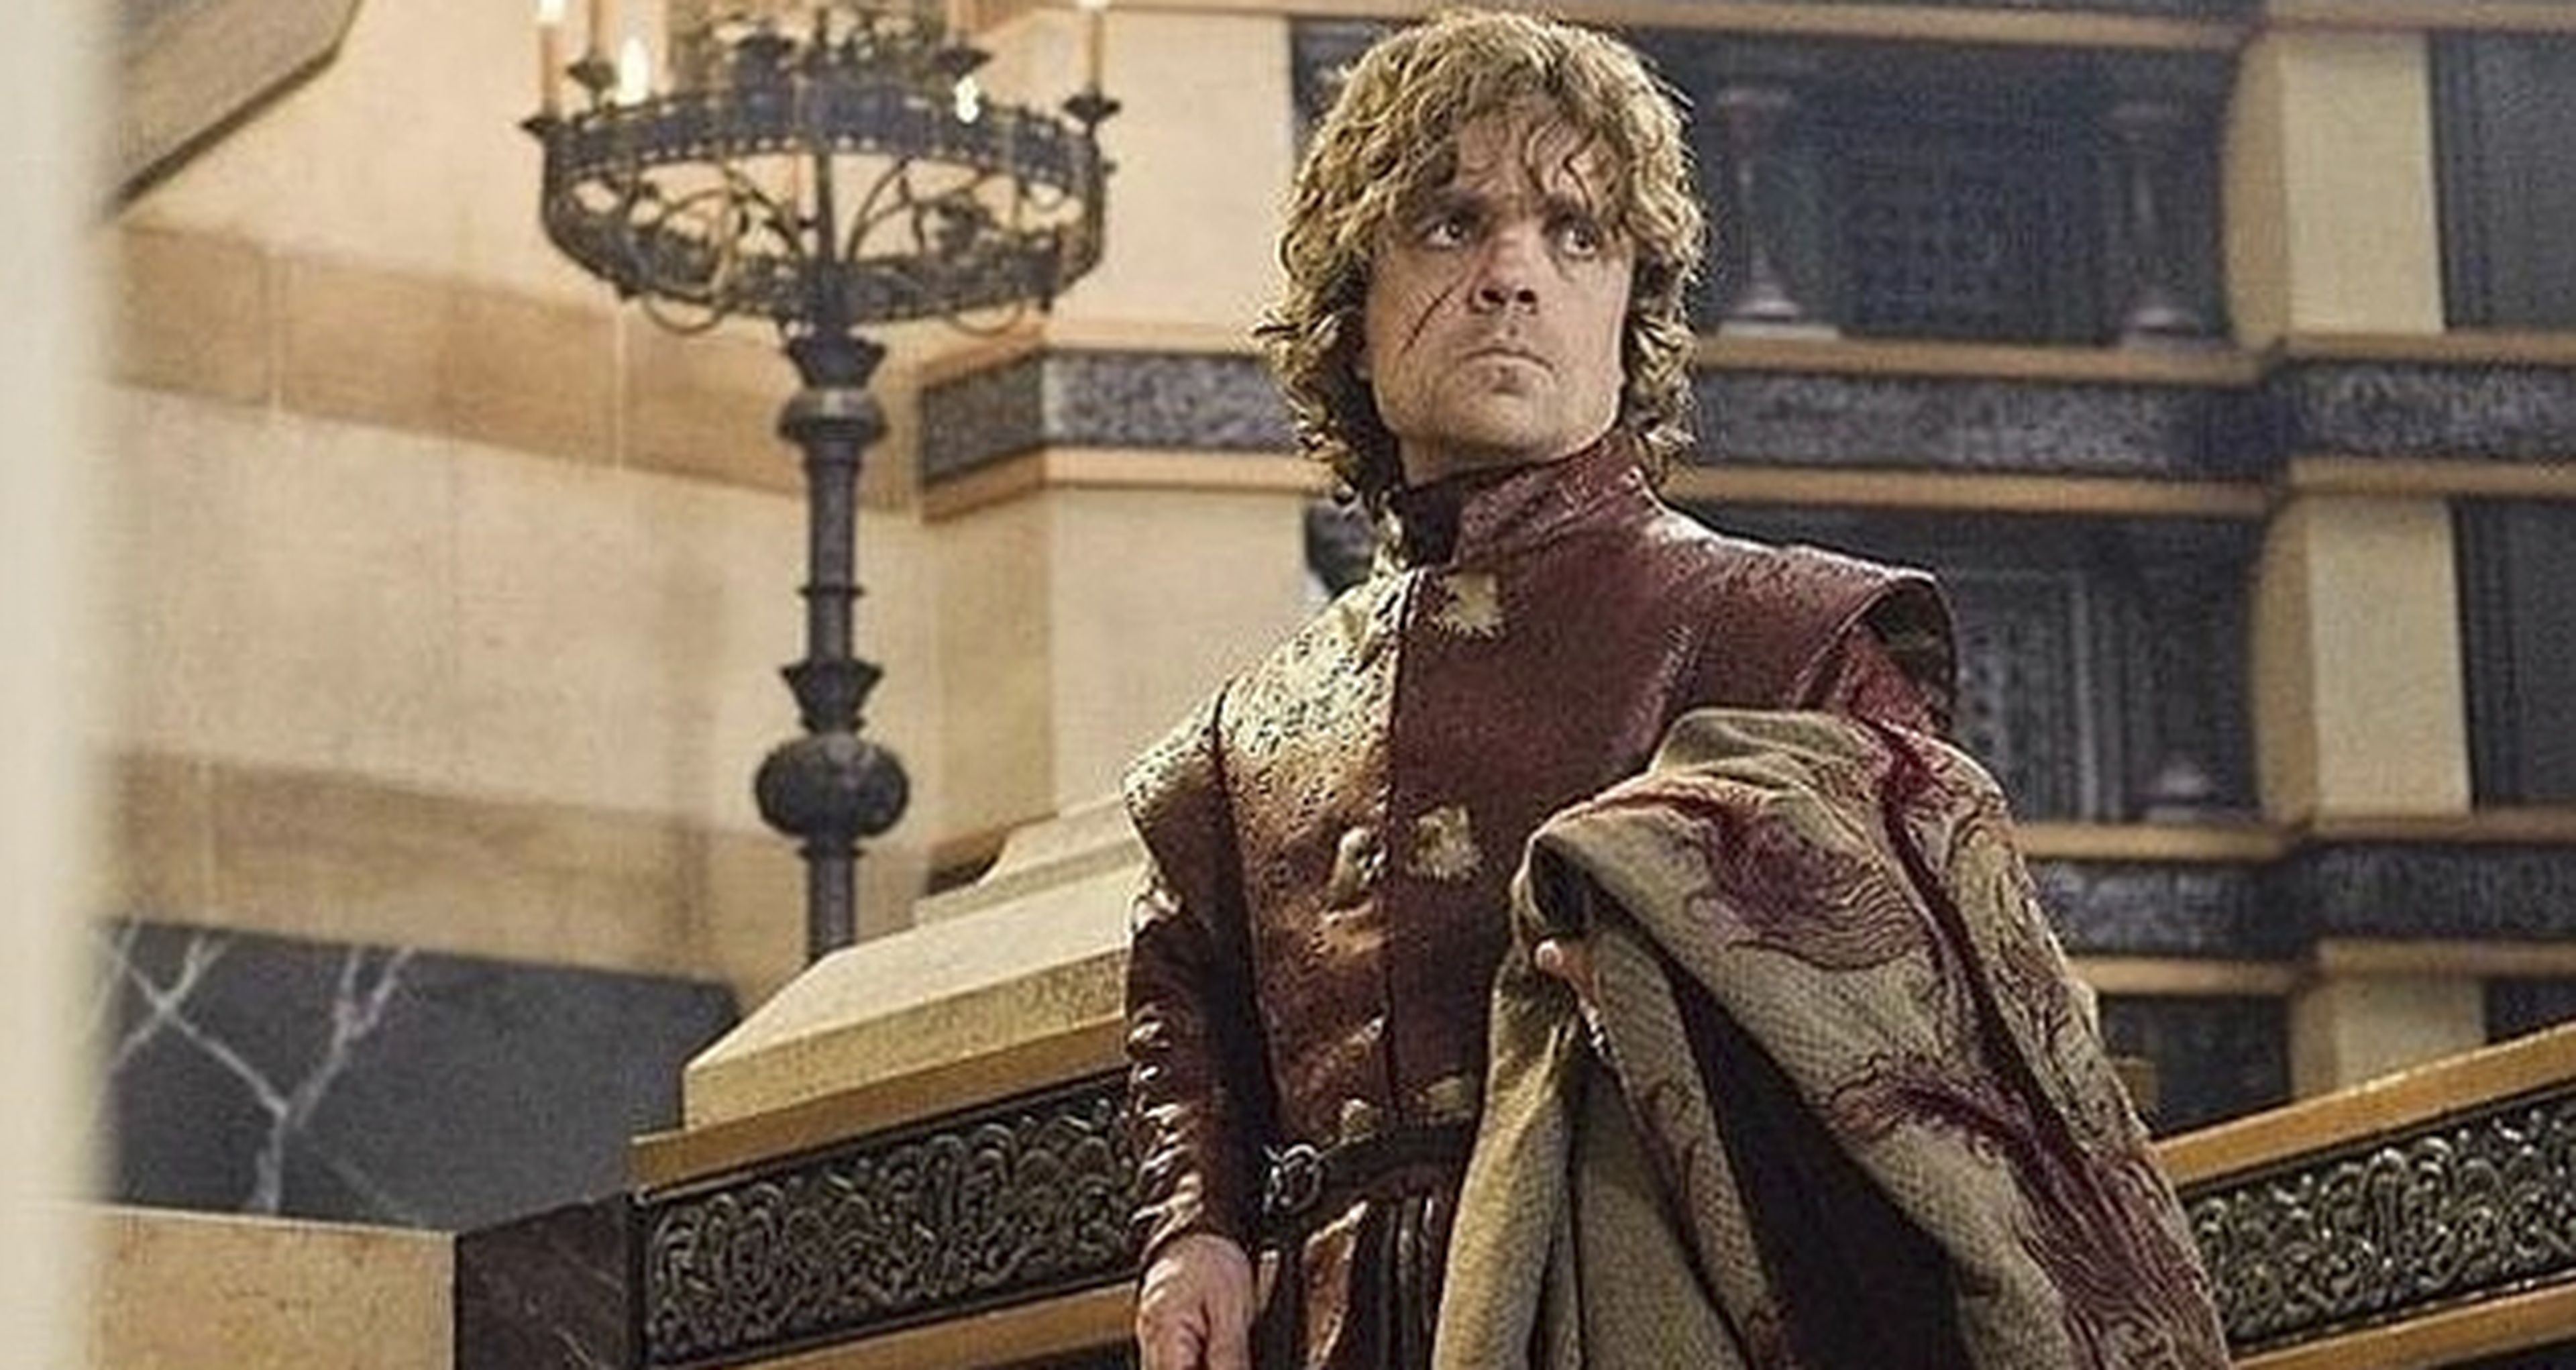 Juego de tronos - Teasers de la temporada 6 de las casas Stark, Lannister y Targaryen